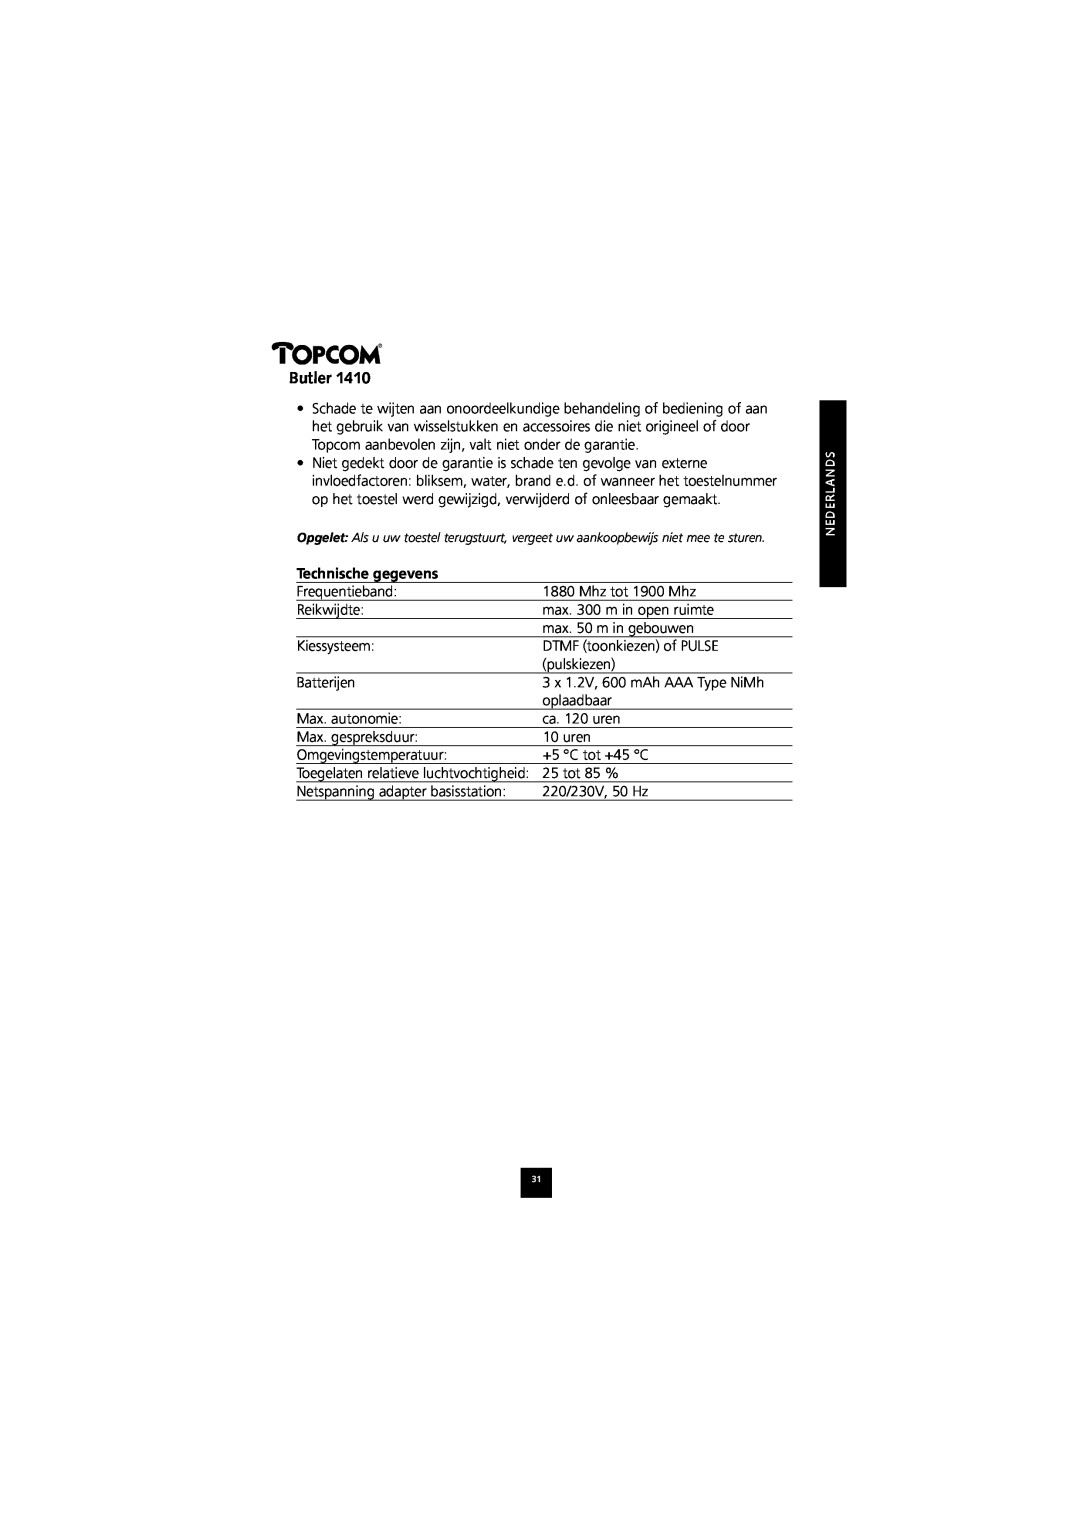 Topcom 1410 manual Technische gegevens, Butler 